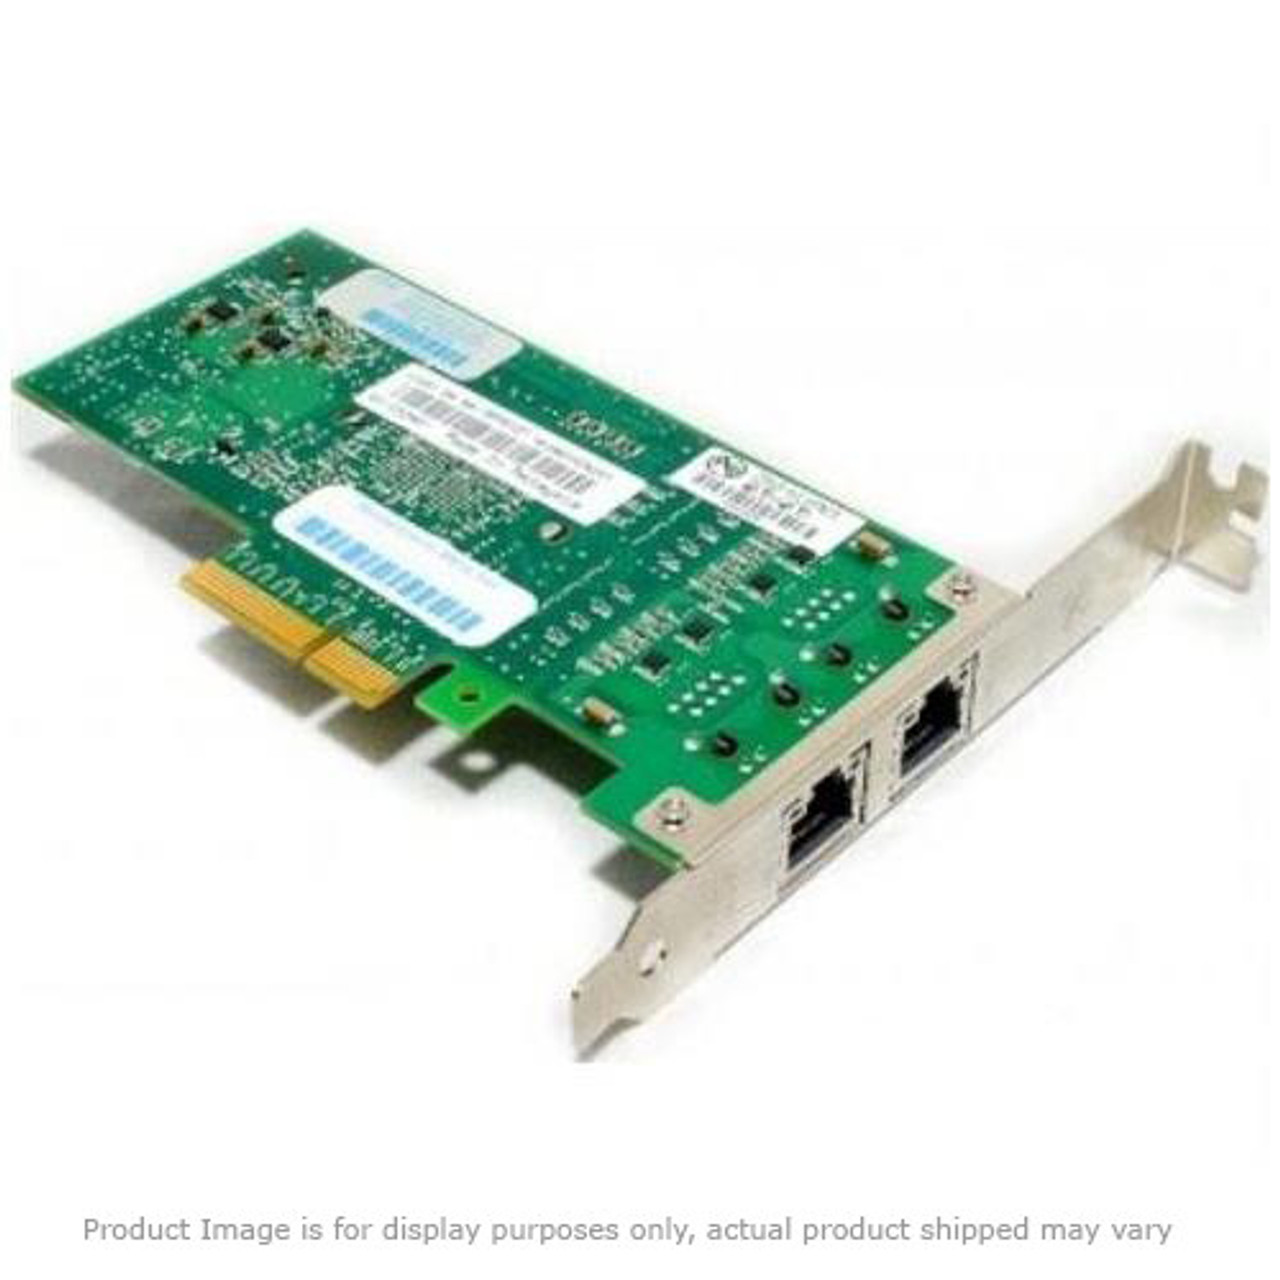 368247-002 Compaq 802.11G Mini PCI Wireless Network Card